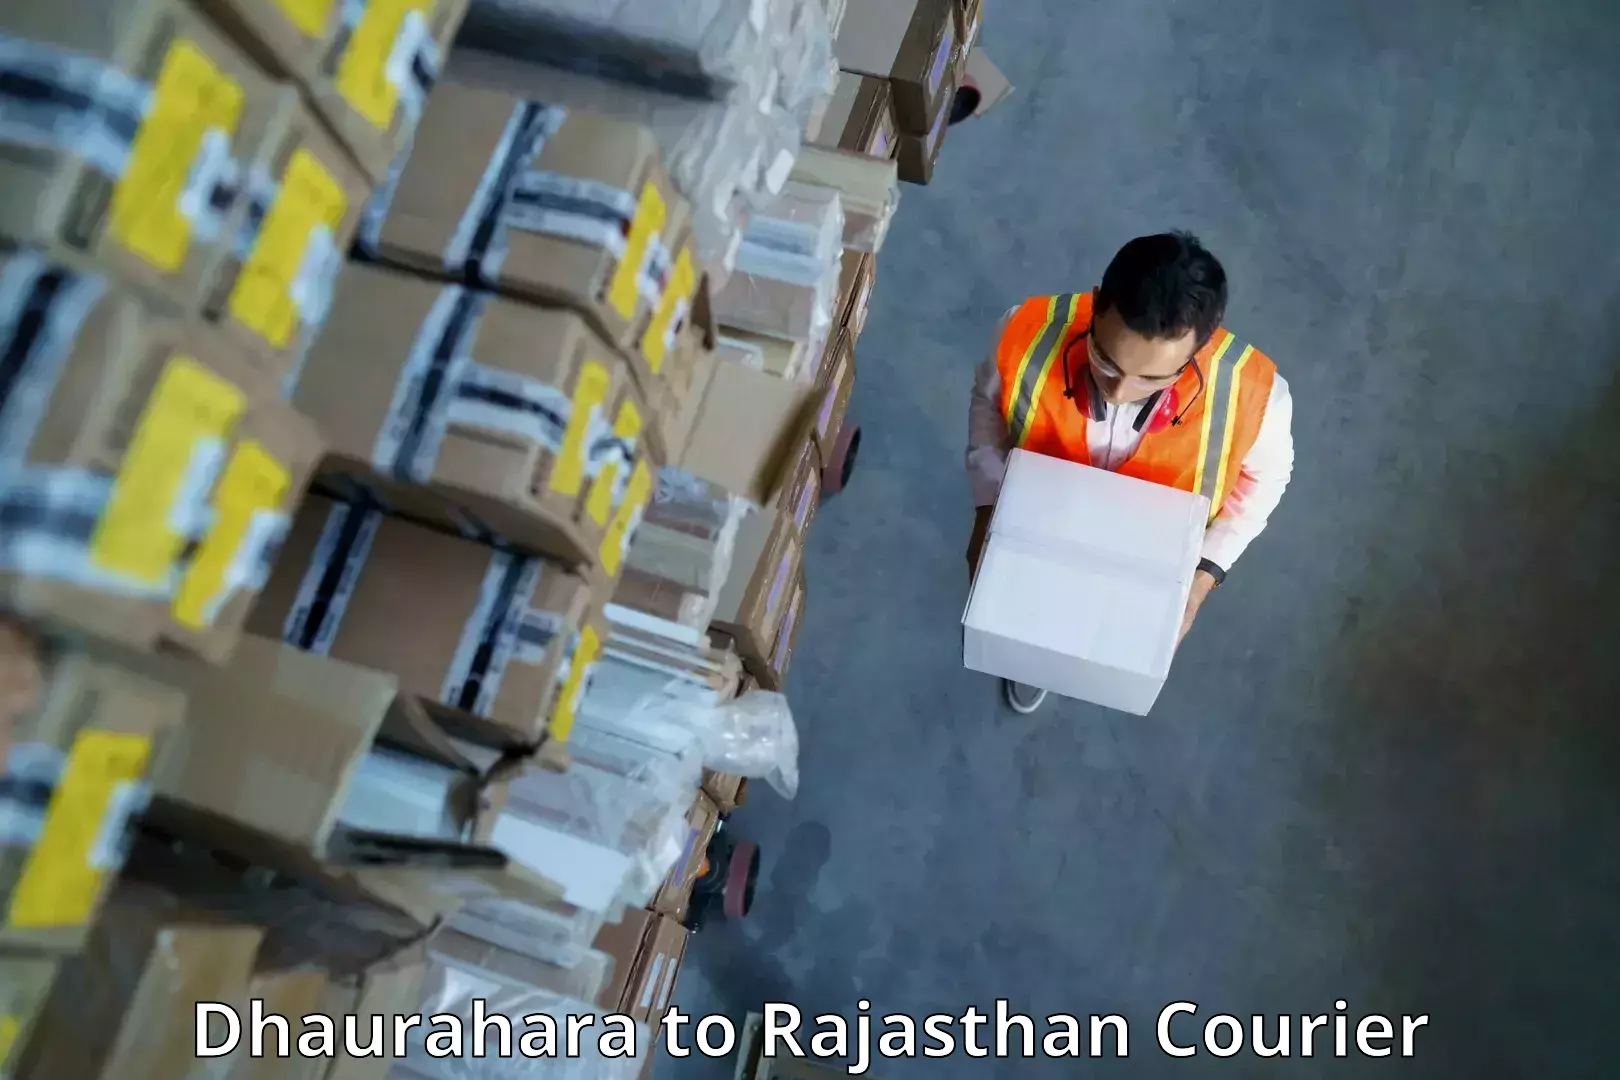 High-capacity parcel service Dhaurahara to Hanumangarh